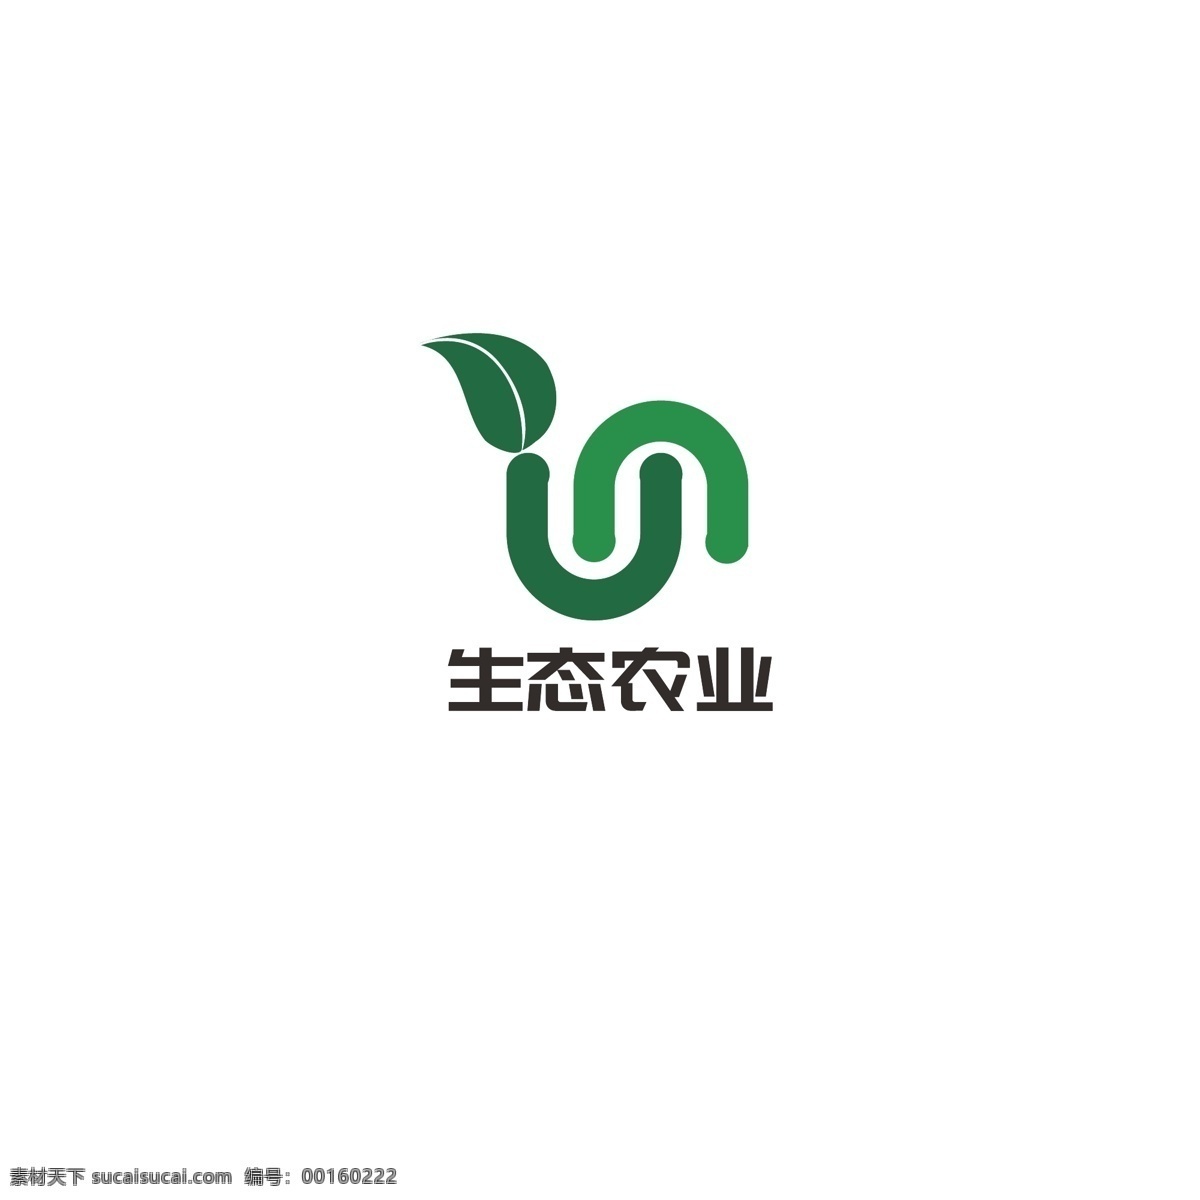 生态农业 logo 农业 发展 自然 健康 叶子 生态 字母n